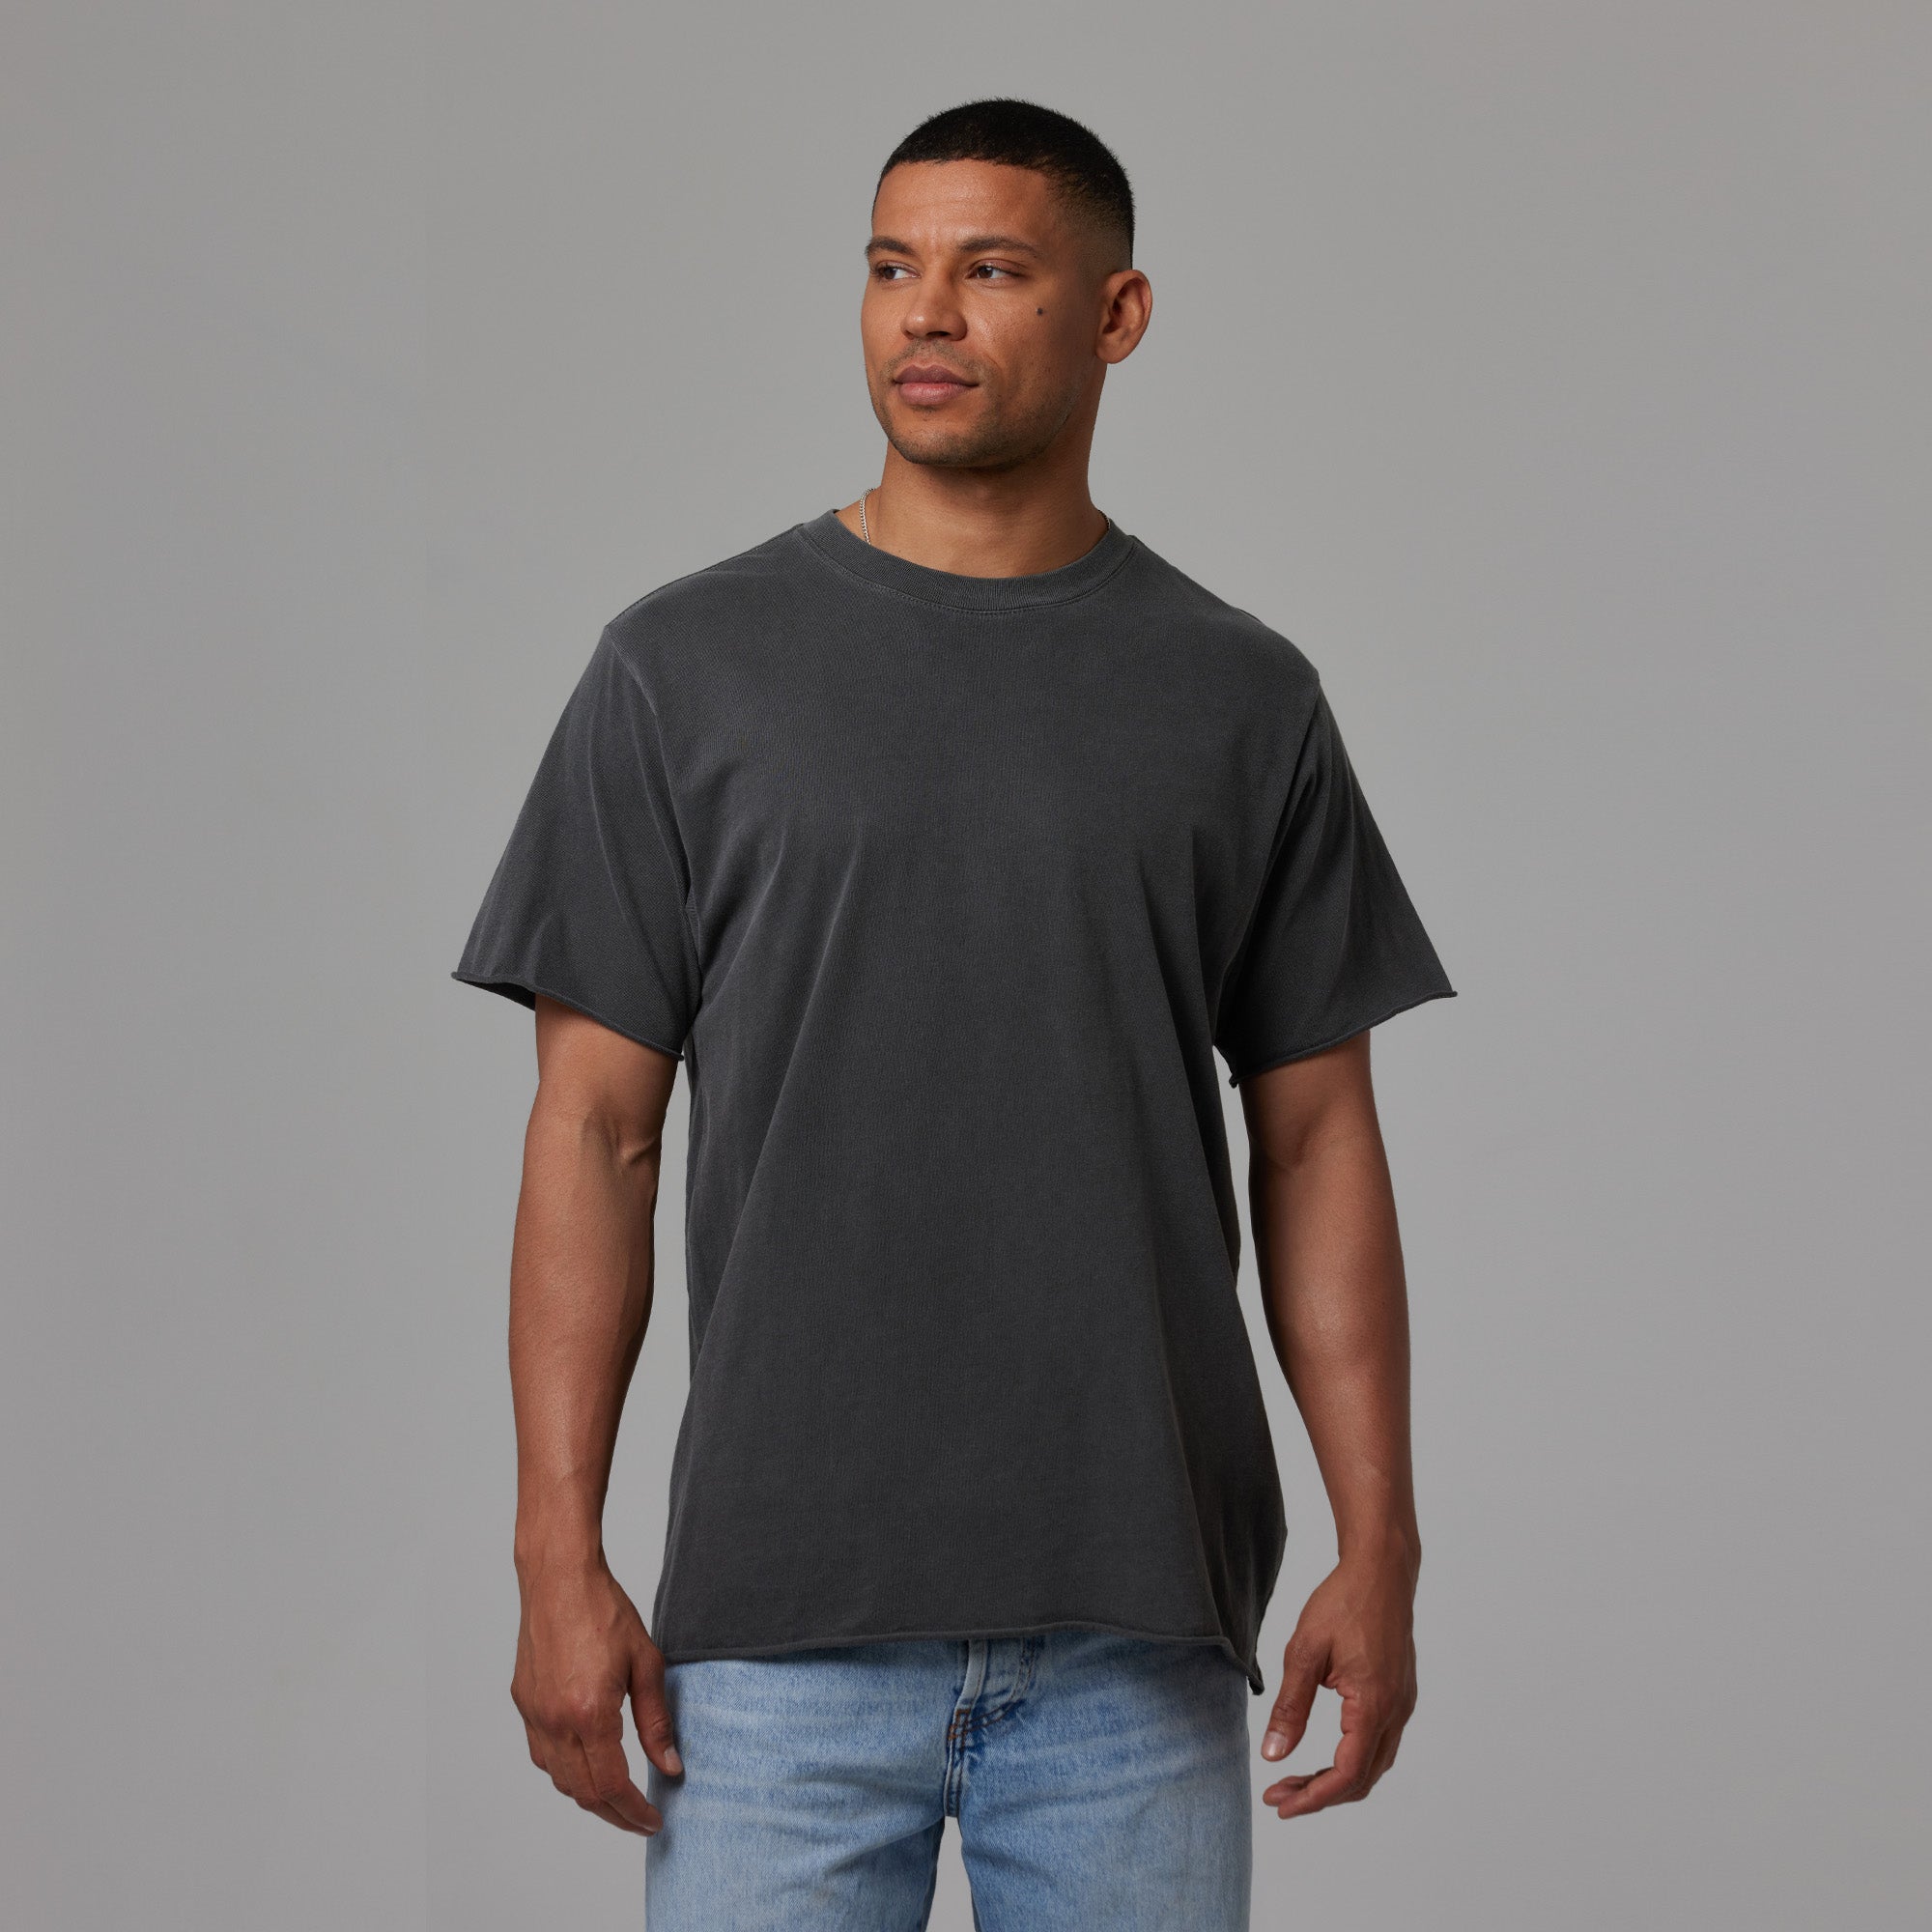 No Feet Men/Unisex T-Shirt  Men unisex, T shirt, Shirts